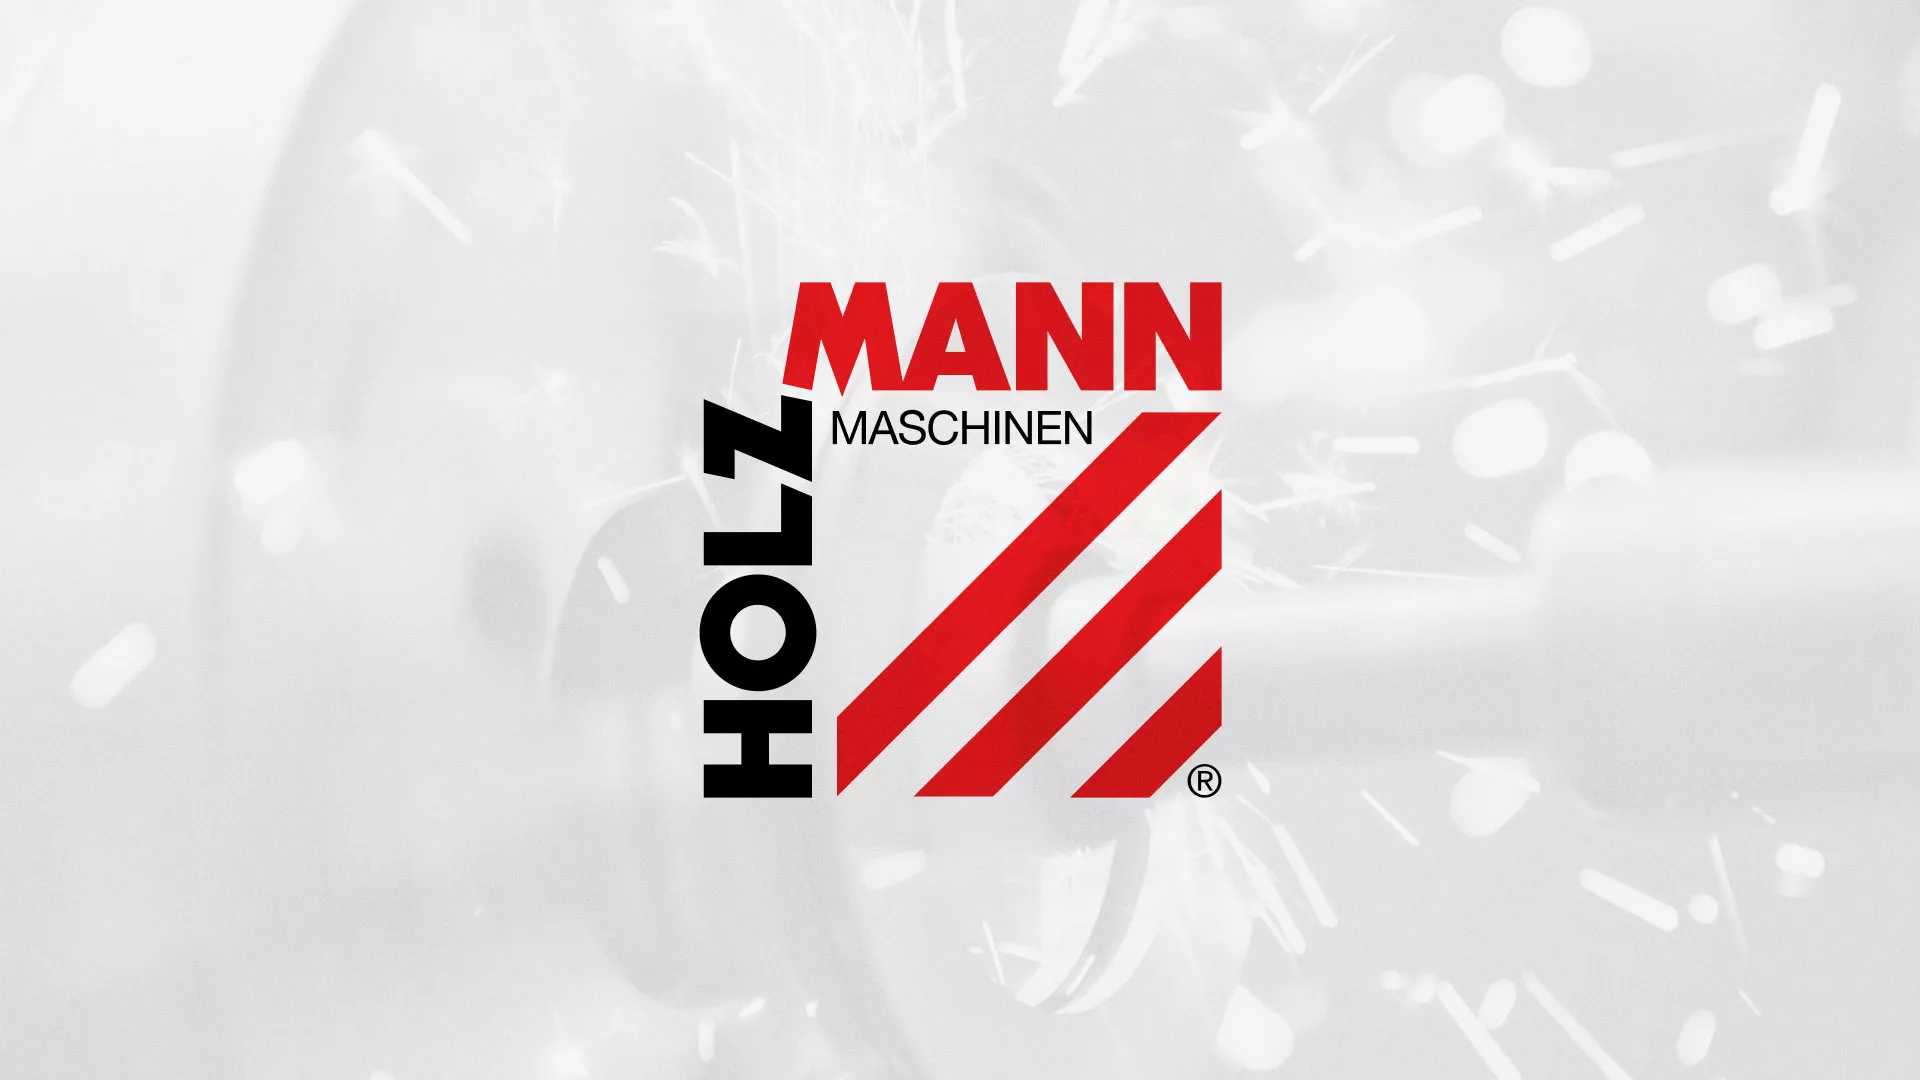 Создание сайта компании «HOLZMANN Maschinen GmbH» в Нижнем Новгороде